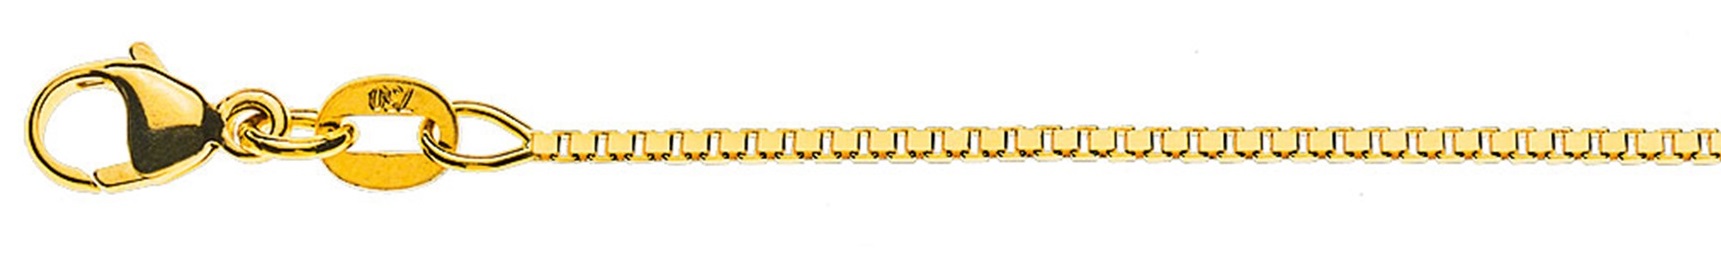 AURONOS Prestige Collier en or jaune 18K vénitien diamanté 60cm 1.1mm